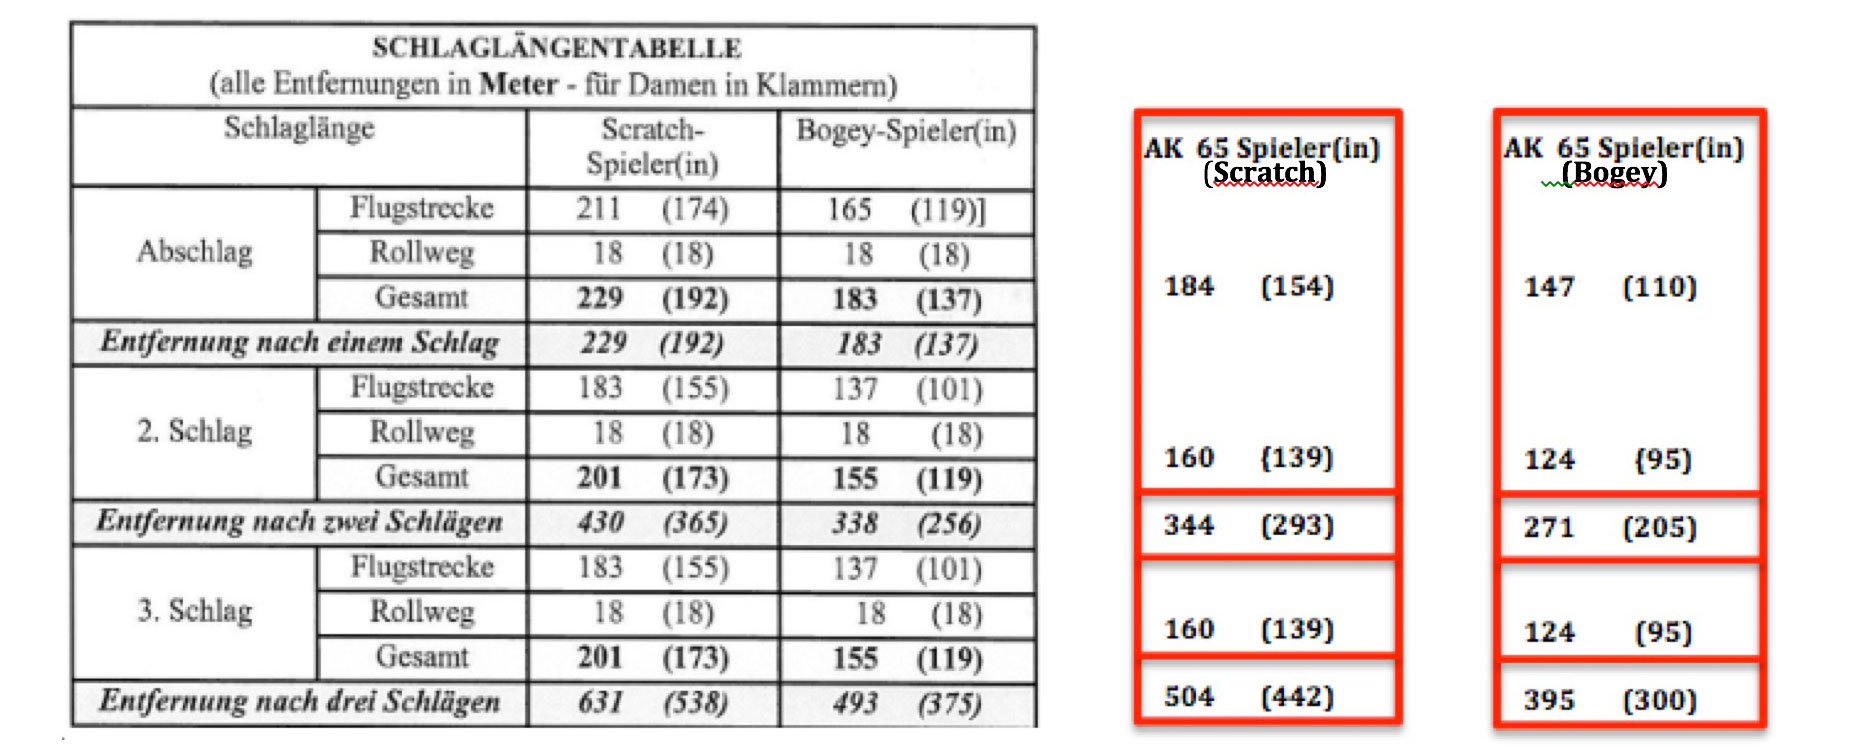 Seniorenfreundlicher Spielbahnlängen-Bonus (-20%) für AK 65 Scratch- und Bogey-Spieler(in) 